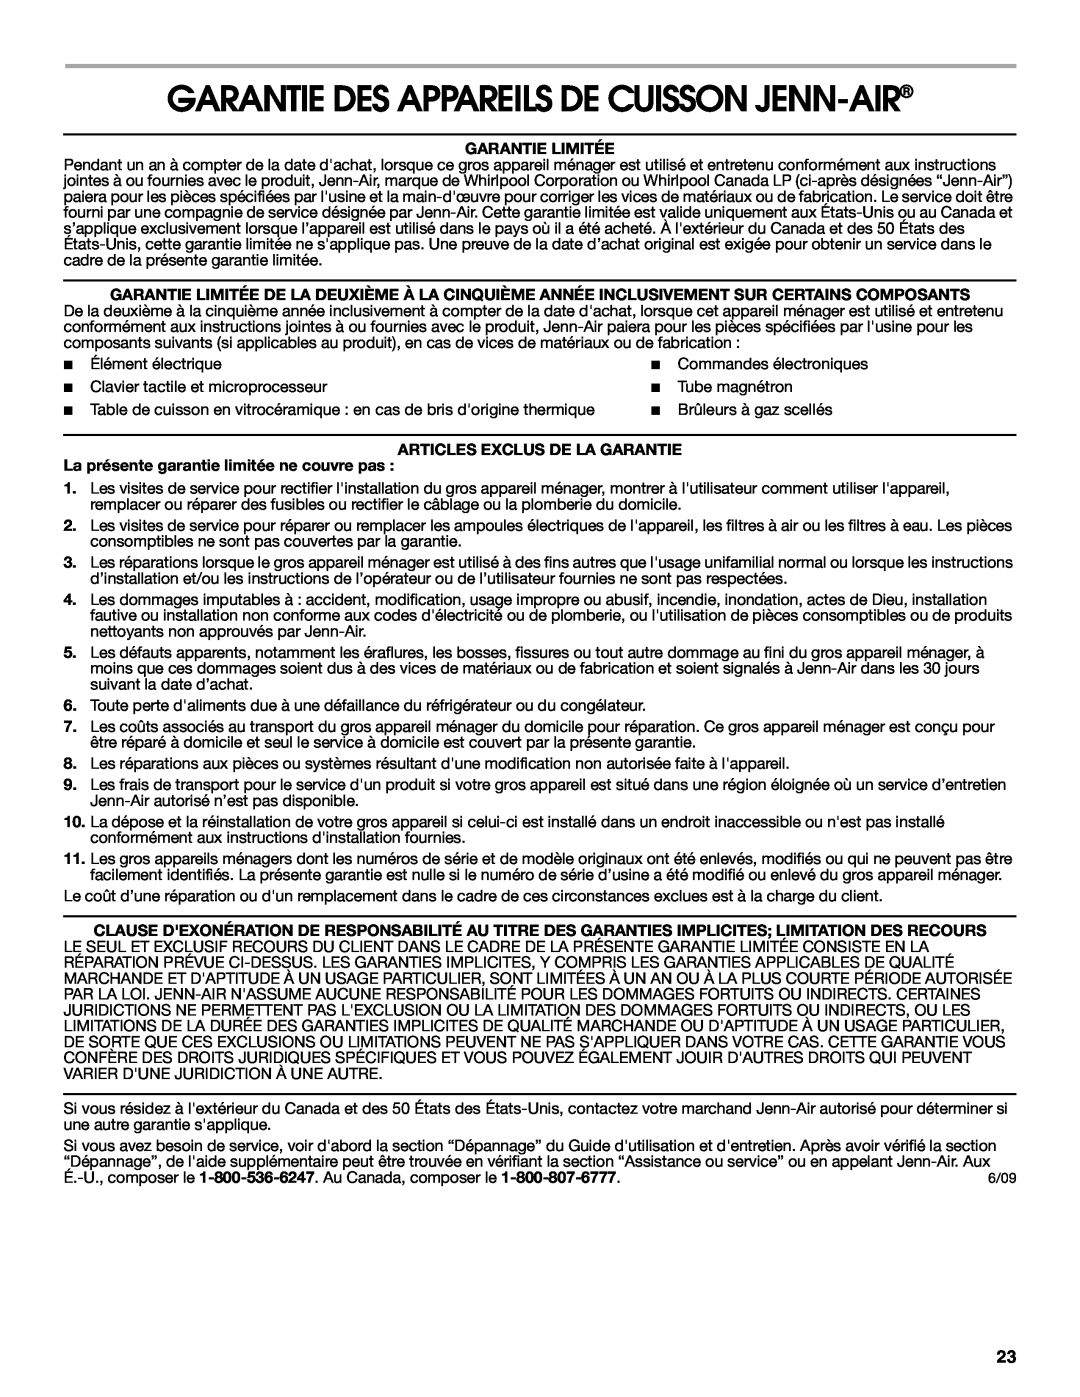 Jenn-Air W10298938A manual Garantie Des Appareils De Cuisson Jenn-Air, Garantie Limitée, Articles Exclus De La Garantie 